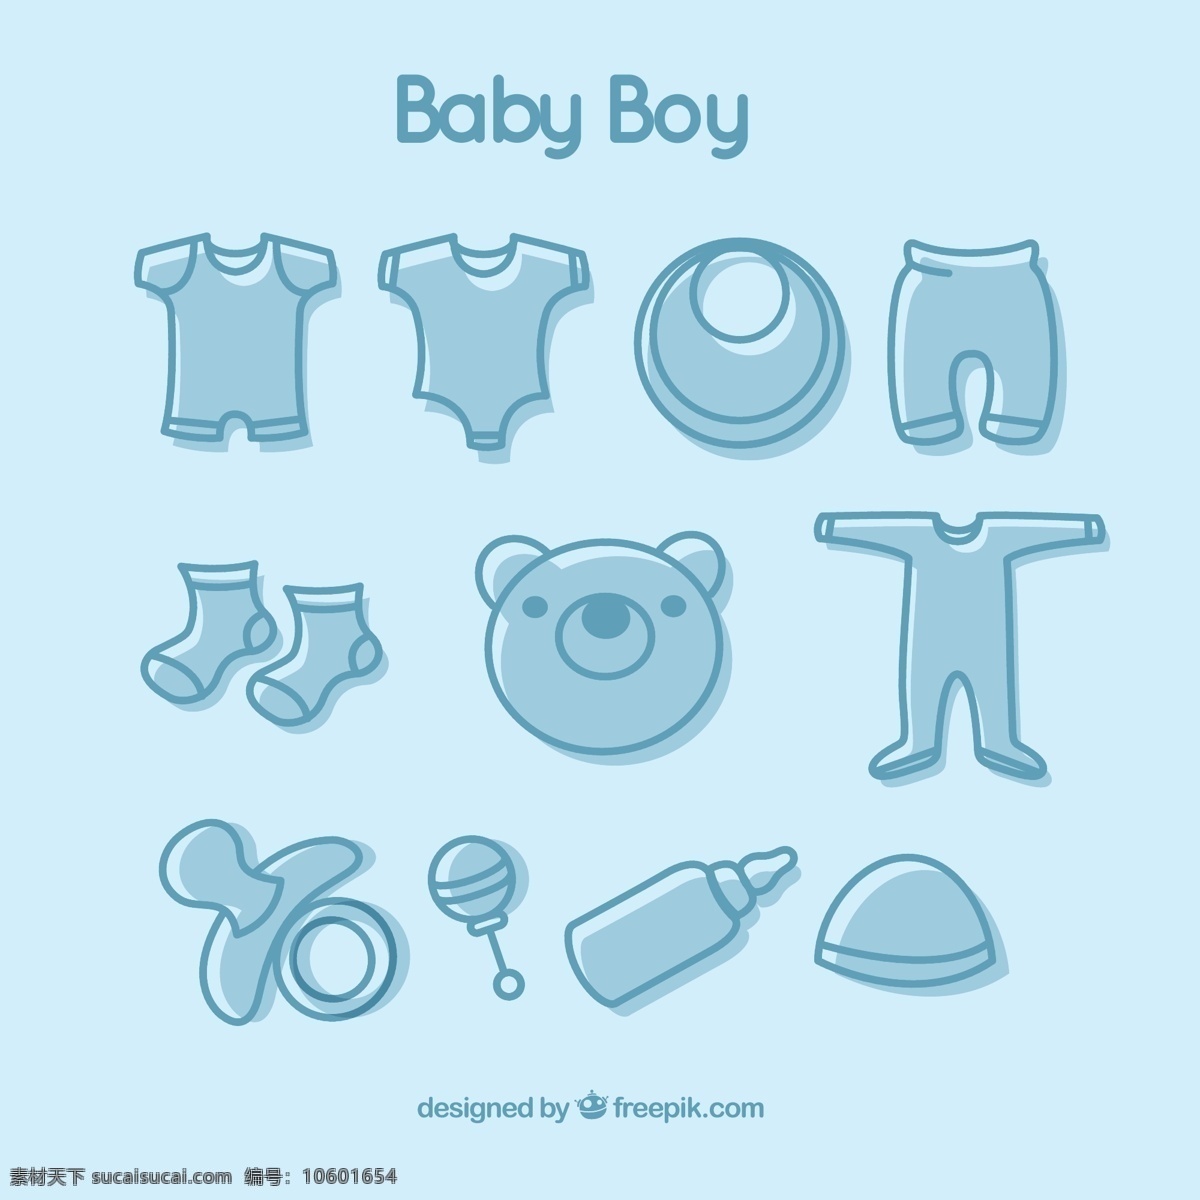 款 蓝色 男婴 用品 图标 矢量 ai格式 含 预览 图 爬服 袜子 围嘴 安抚奶嘴 奶瓶 衣服 婴儿 婴儿用品 矢量图 灰色